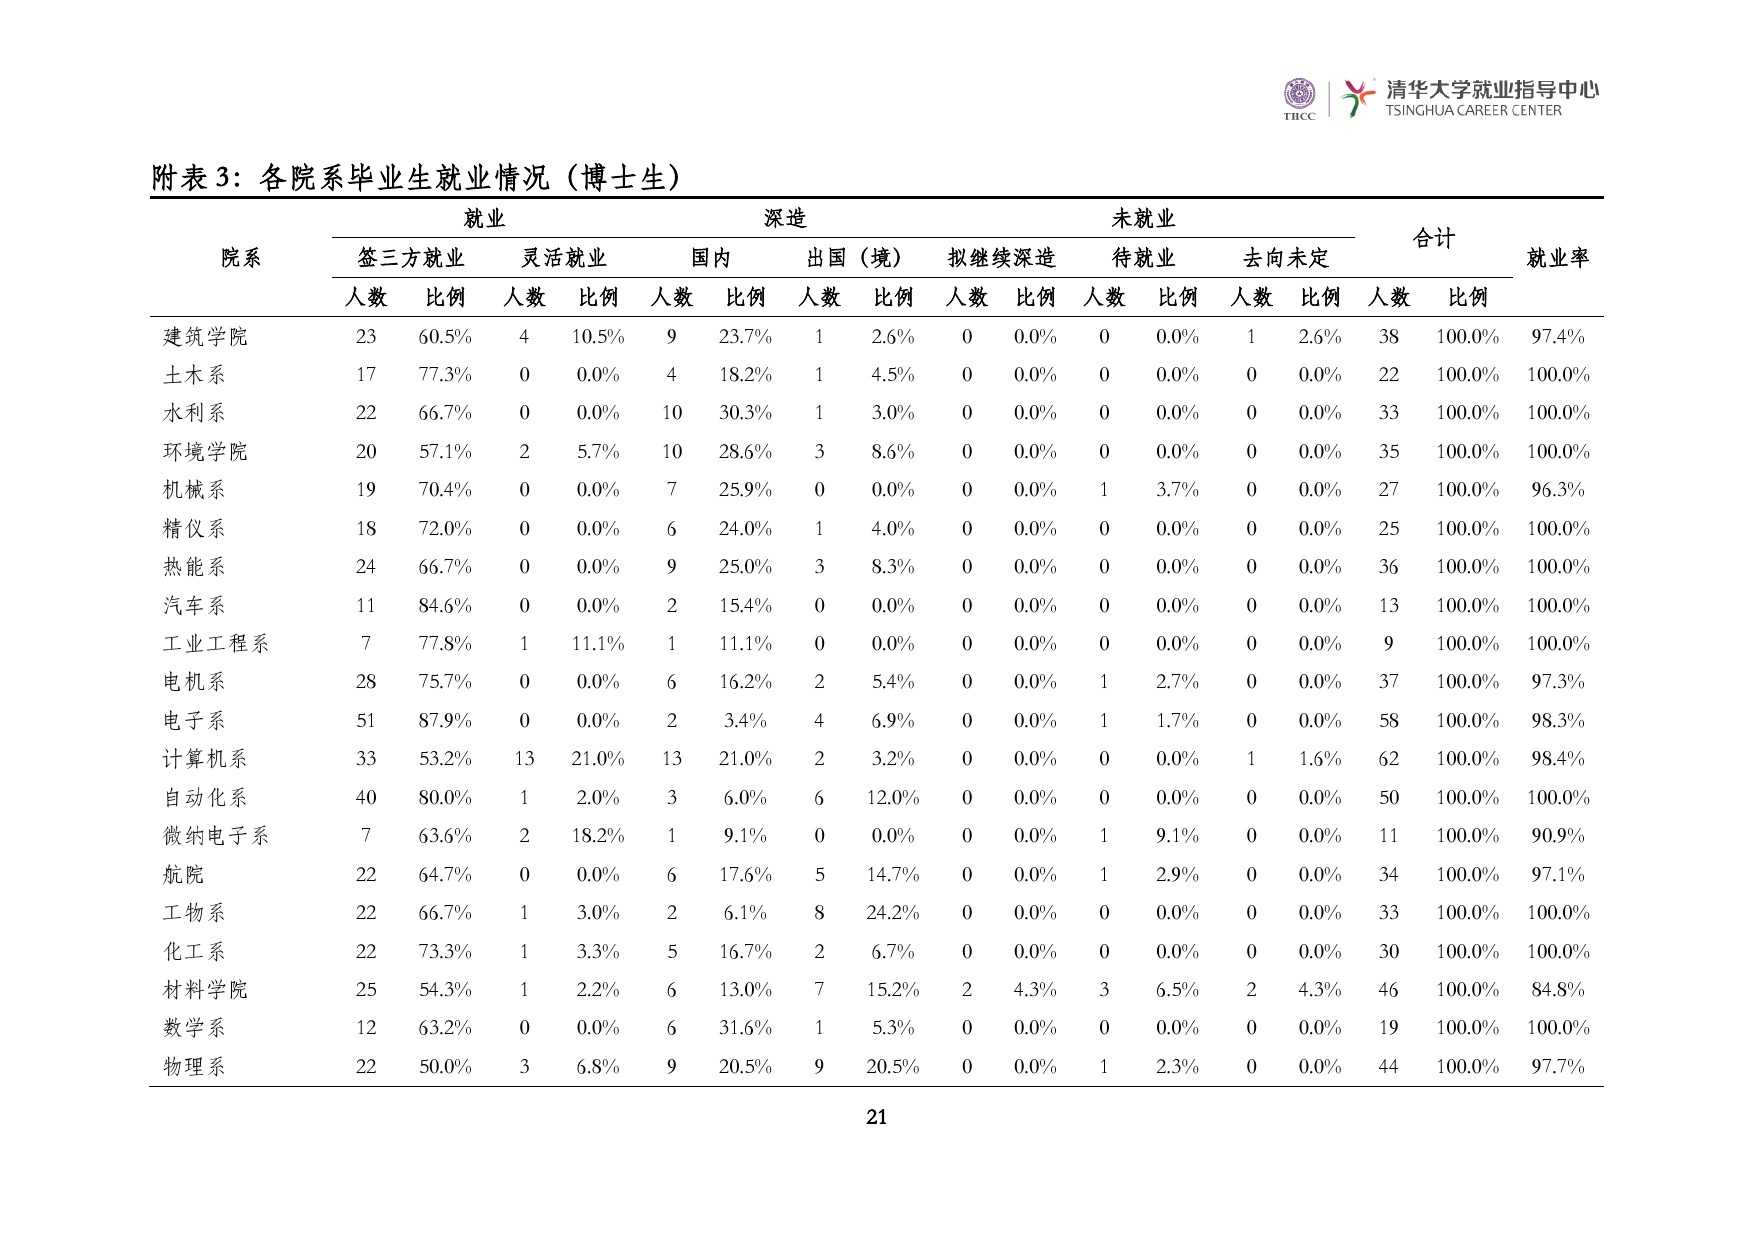 清華大學2014 年畢業生就業質量報告_000023